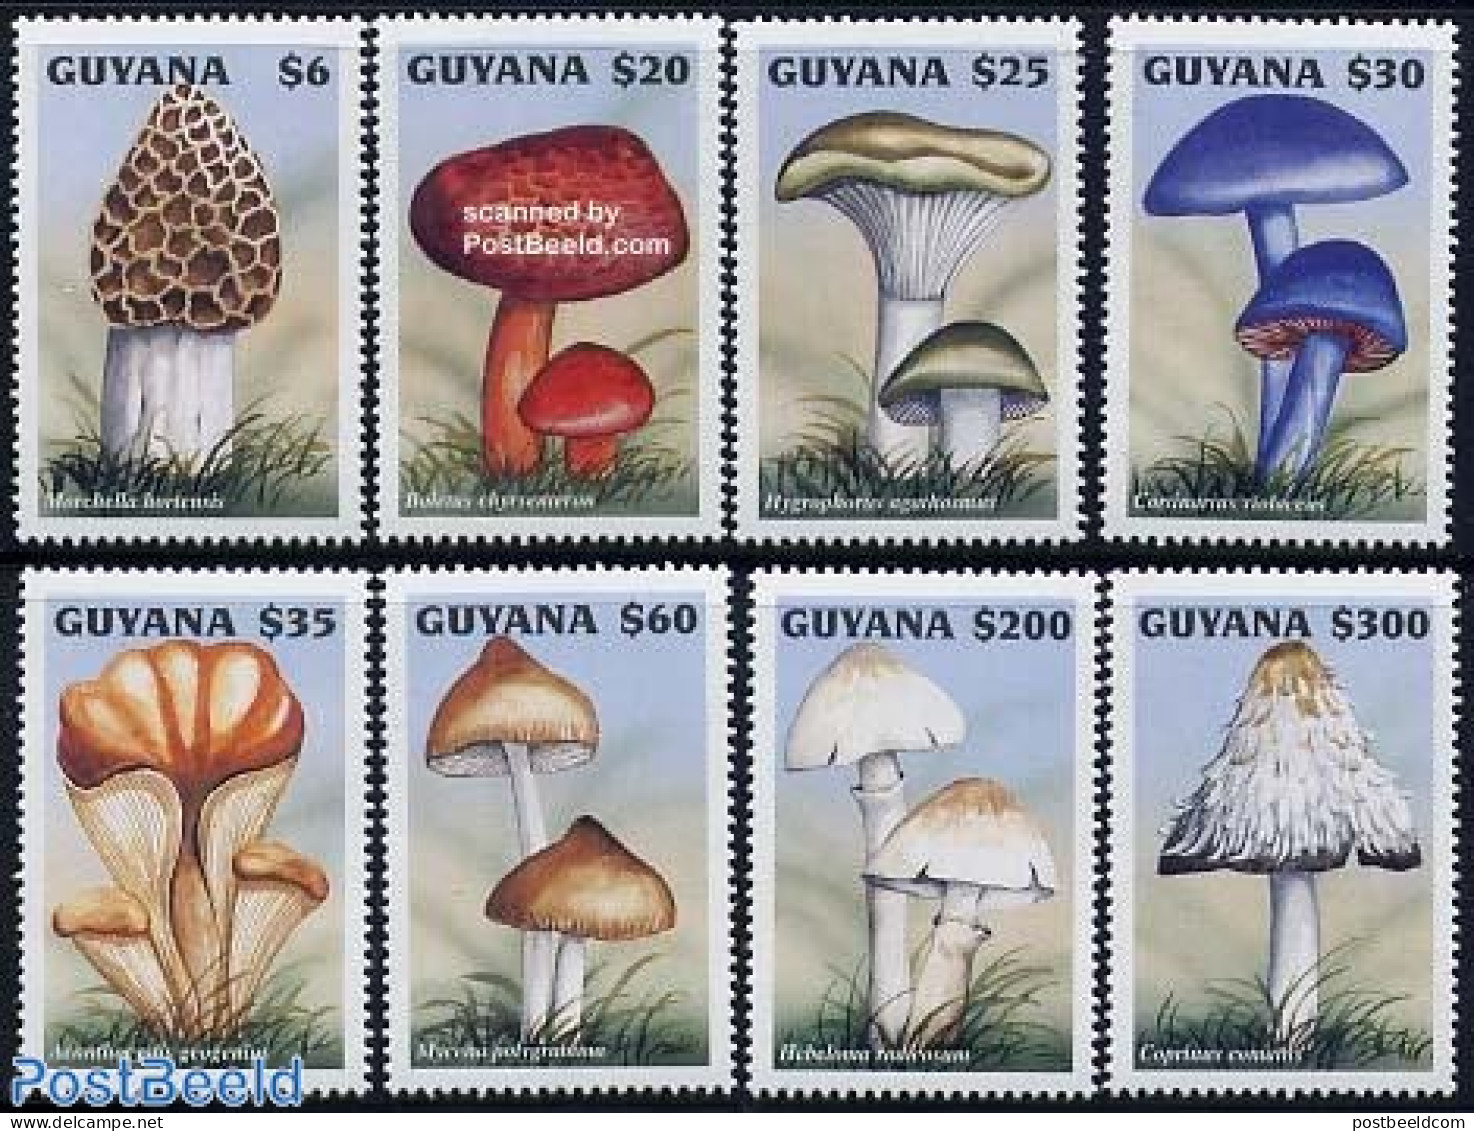 Guyana 1997 Mushrooms 8v, Mint NH, Nature - Mushrooms - Mushrooms